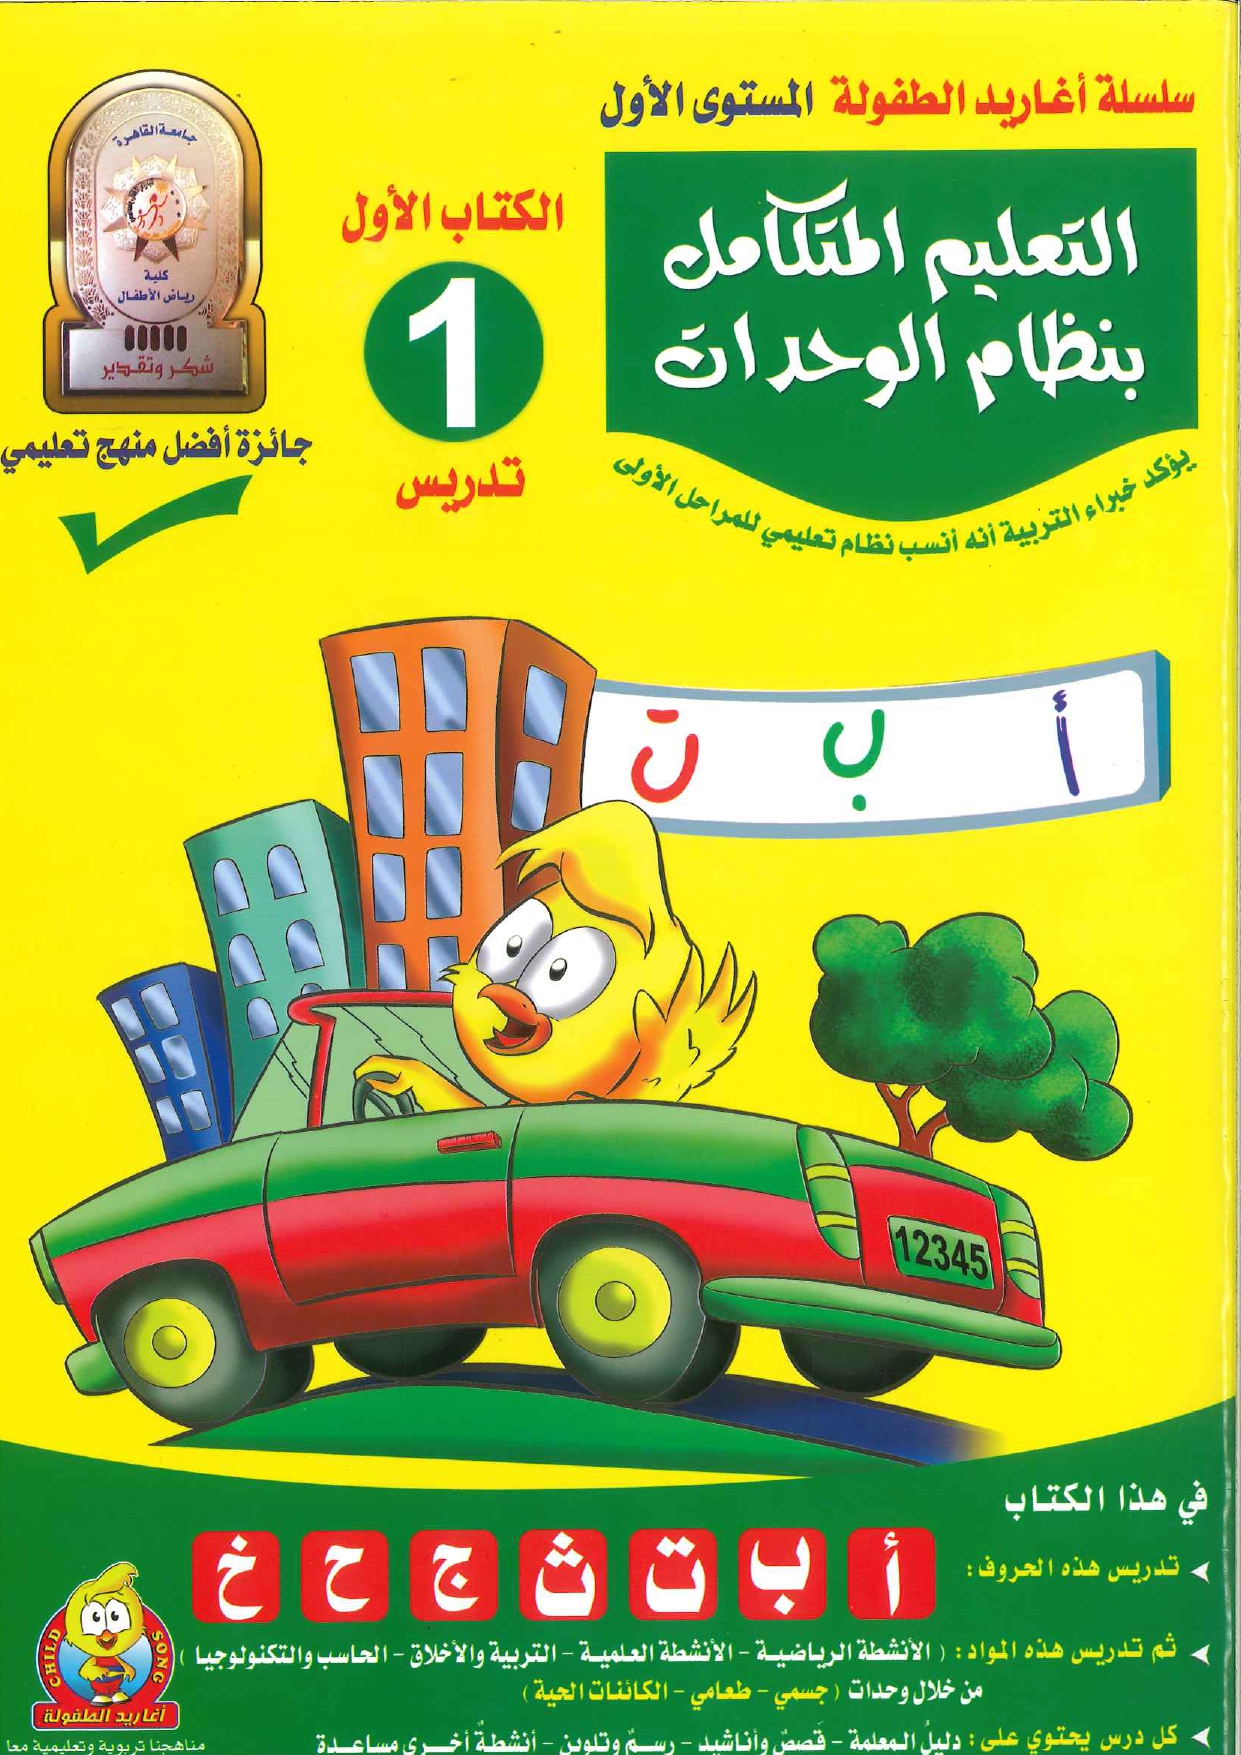 سلسلة أغاريد الطفولة المستوى الأول - التعليم المتكامل بنظام الوحدات - الكتاب 1